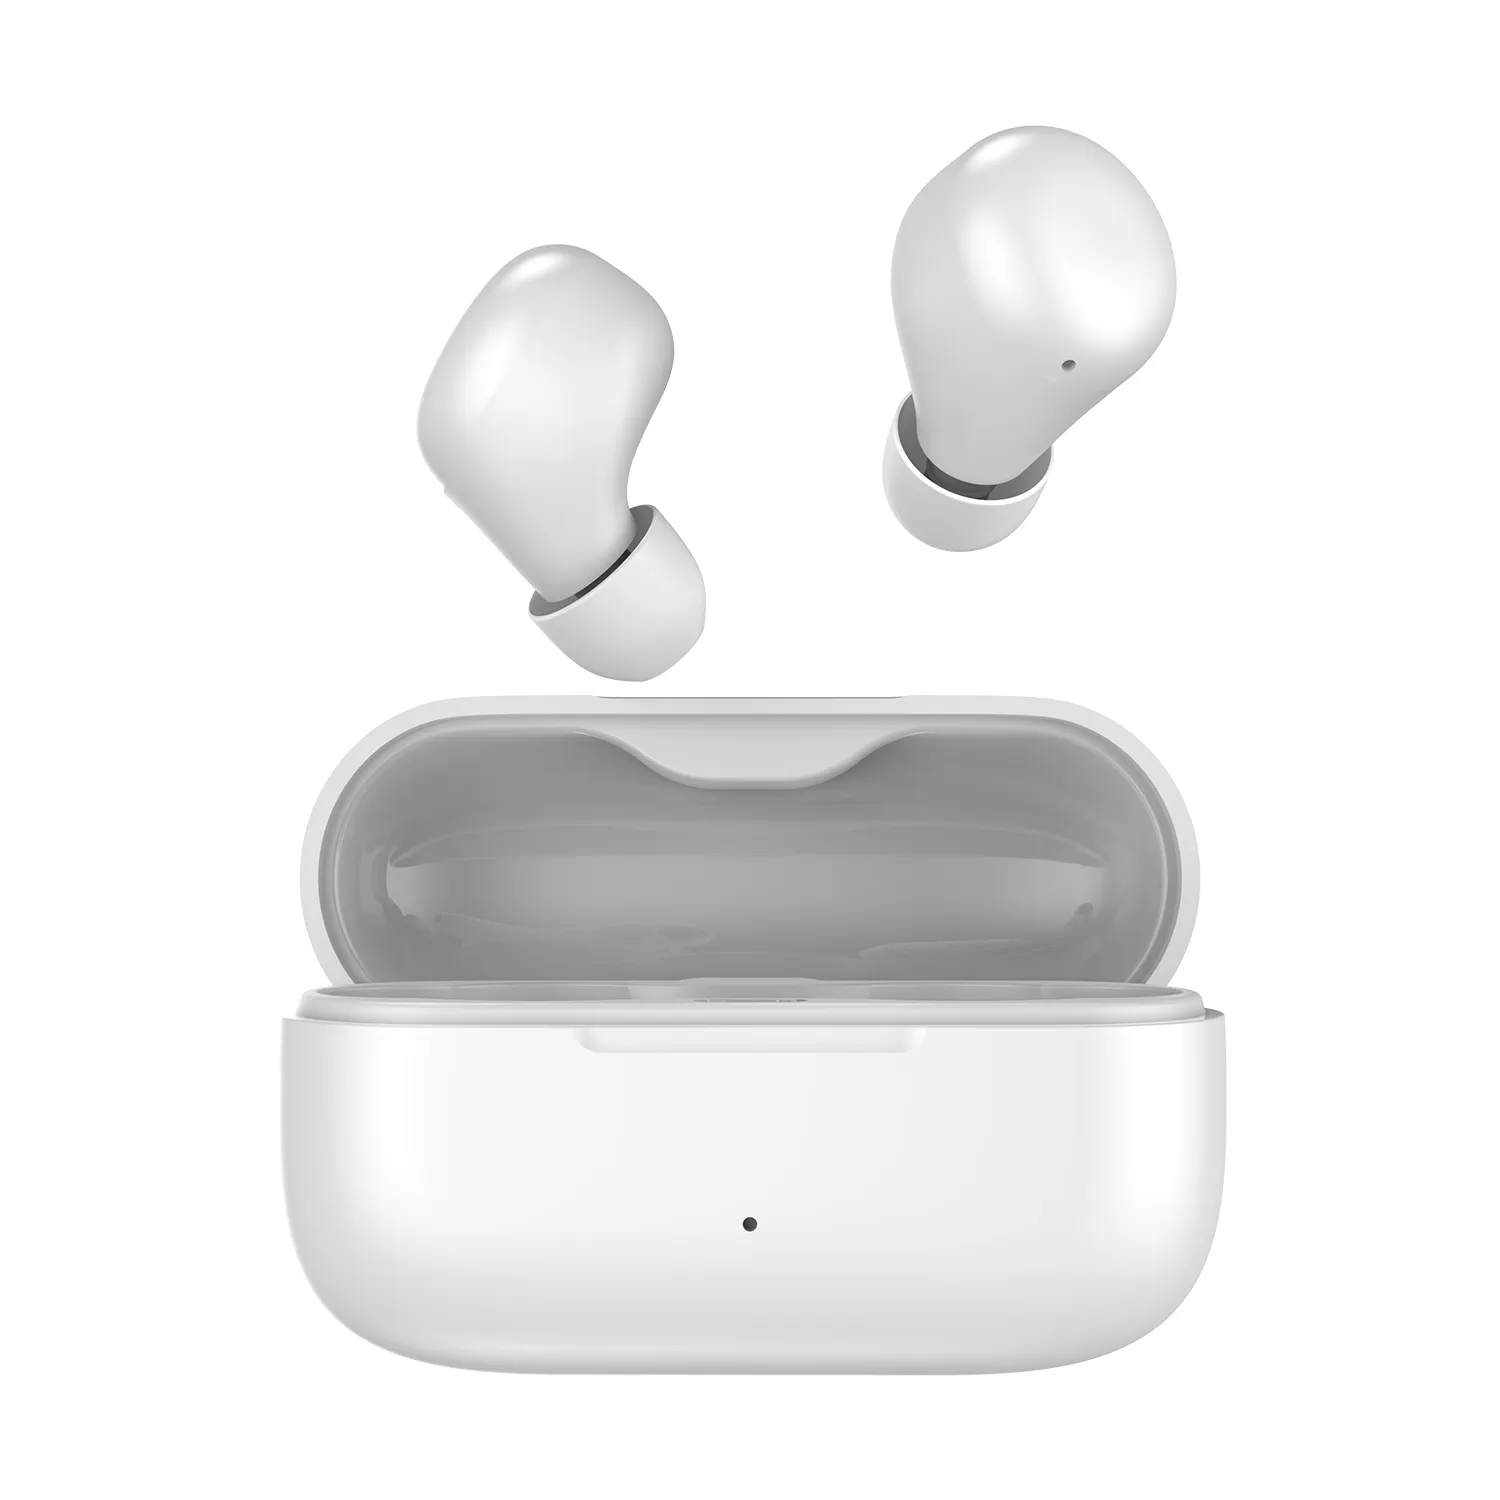 Fones de ouvido sem fio tws pro, com bluetooth, microfone e fone de ouvido, auricular, com amostra gratuita